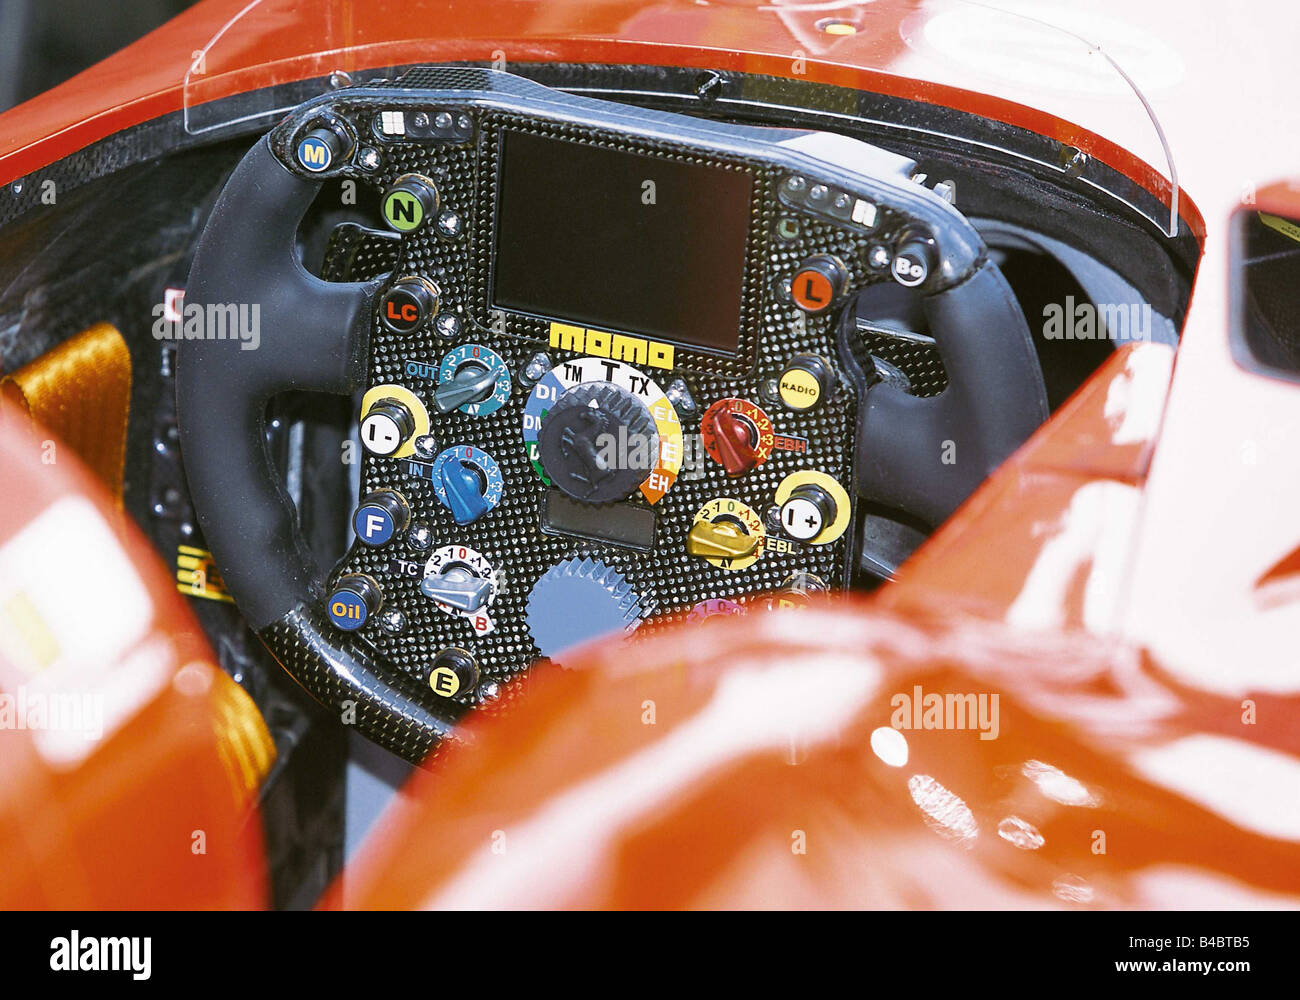 Voiture, Formule 1, volant F2002, saison ams 22/2002, page 234, la technique/accessoire, accessoires Photo Stock - Alamy